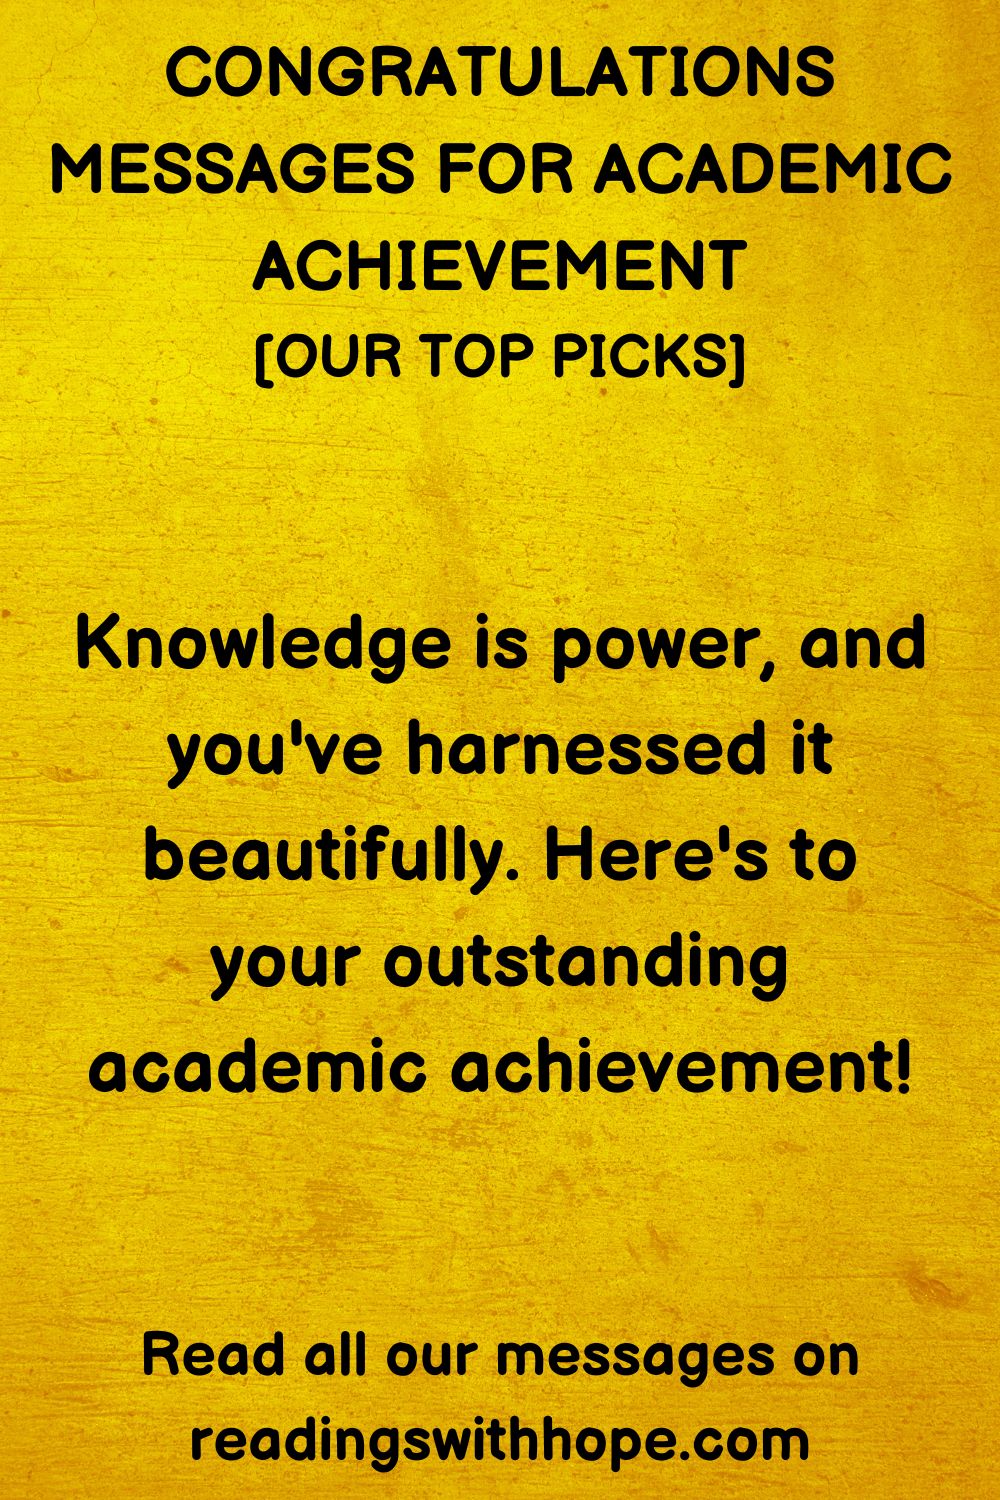 Congratulations Message for Academic Achievement
